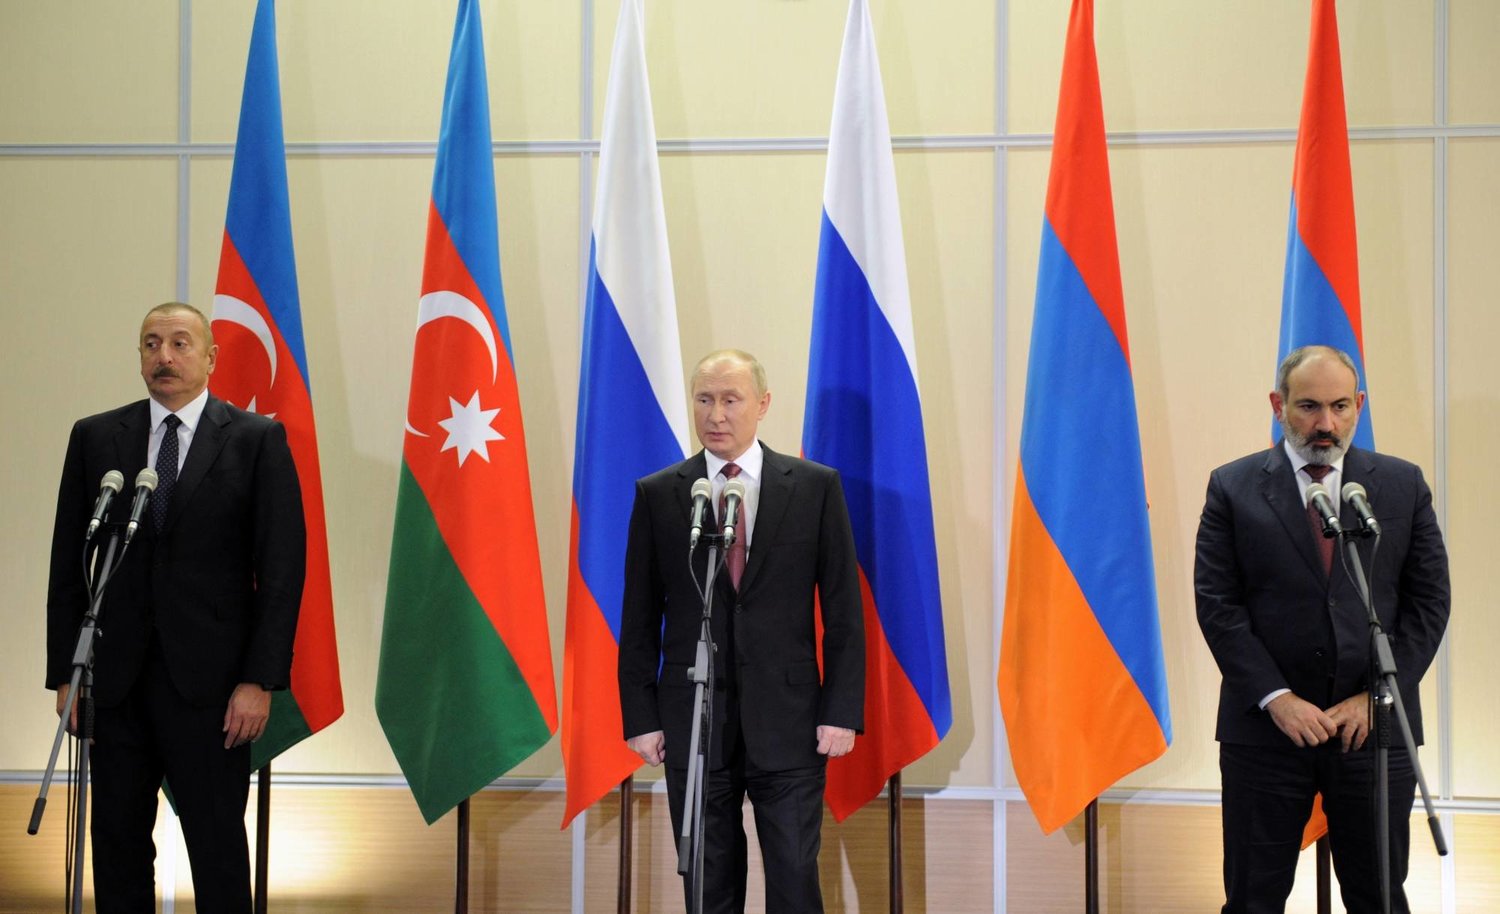 الرئيس الروسي فلاديمير بوتين (وسط) ورئيس وزراء أرمينيا نيكول باشينيان (يمين الصورة) والرئيس الأذربيجاني إلهام علييف يحضرون مؤتمراً صحافياً عقب اجتماعهم الثلاثي في سوتشي بروسيا في 26 نوفمبر 2021 (رويترز)